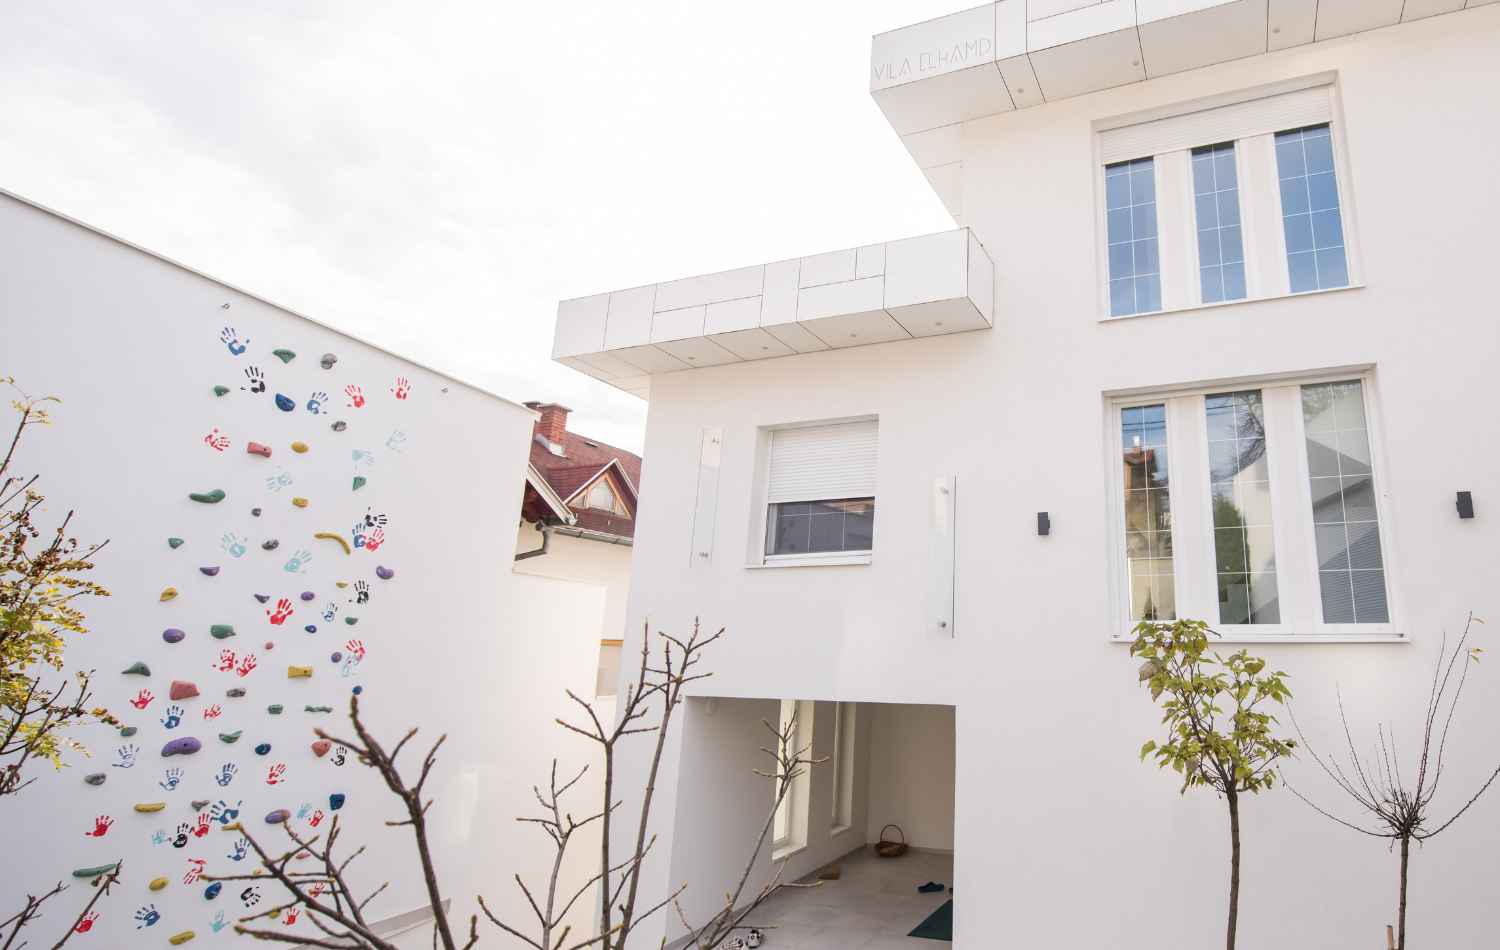 יצירת בתי חלומות: מהי אמנות אדריכלית בבתים פרטיים?